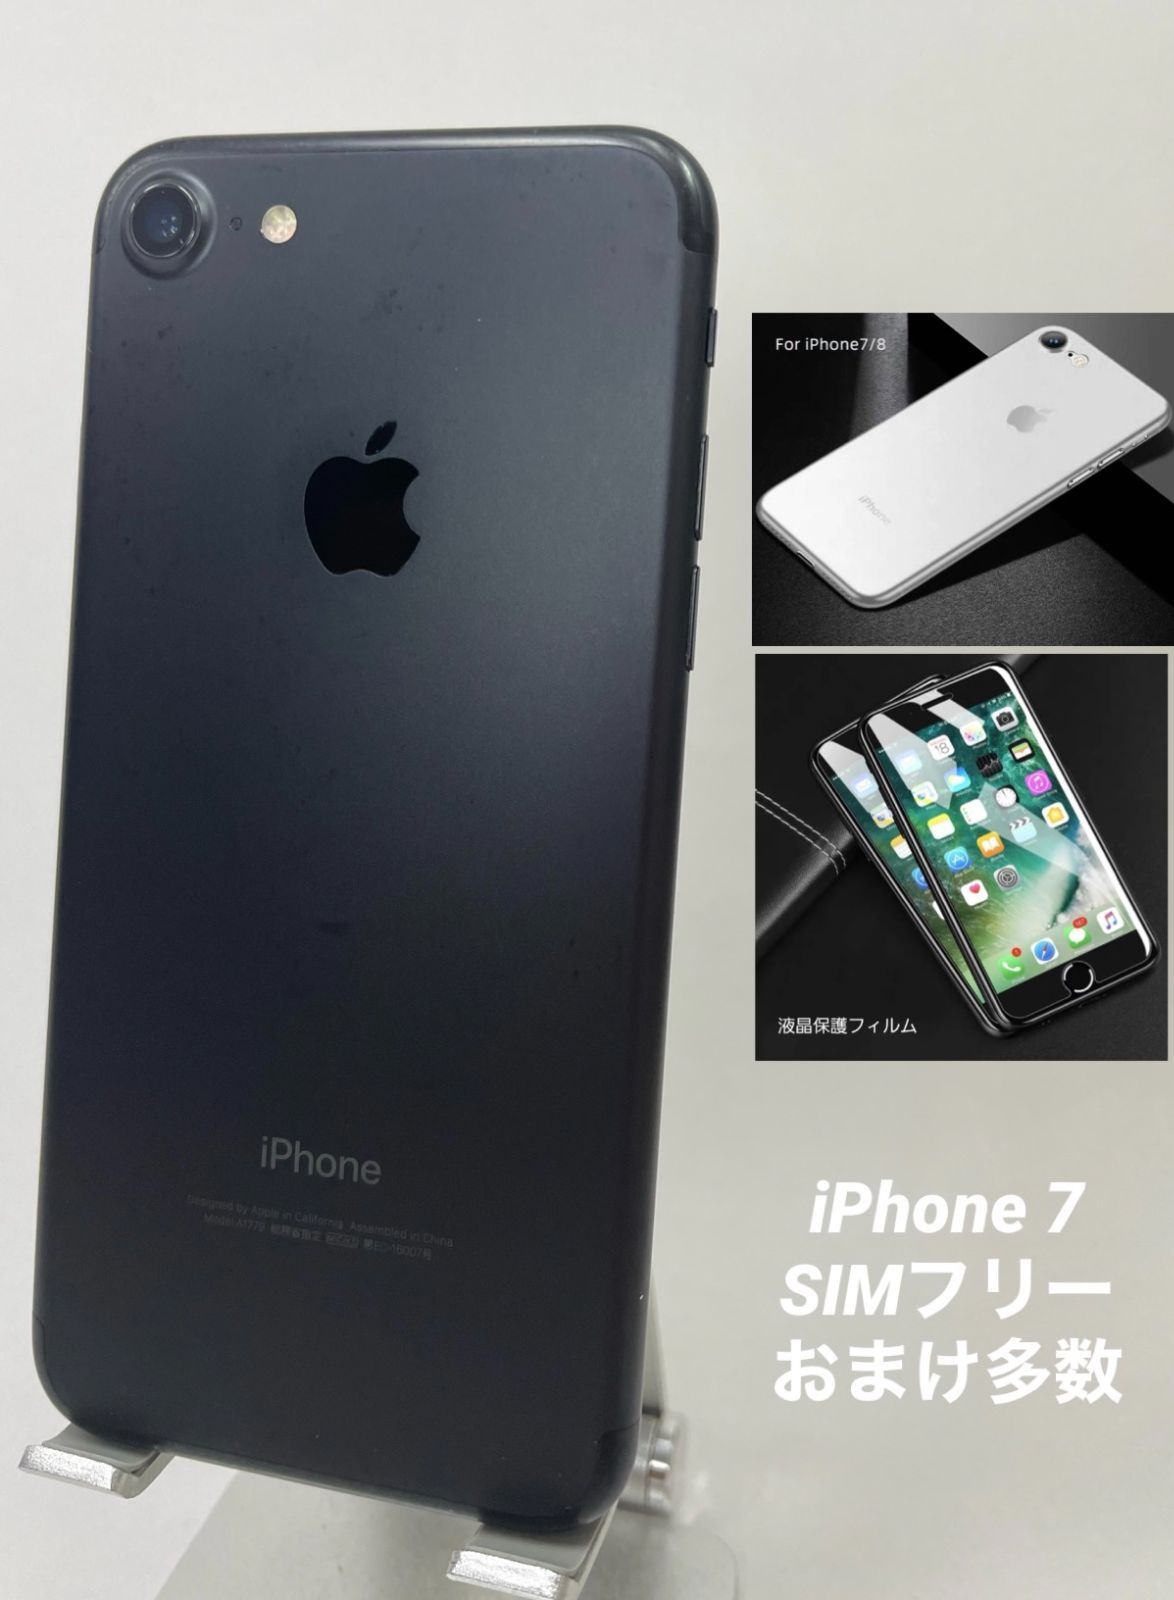 スマートフォン本体iPhone 7 128GB sim free シムフリー Black